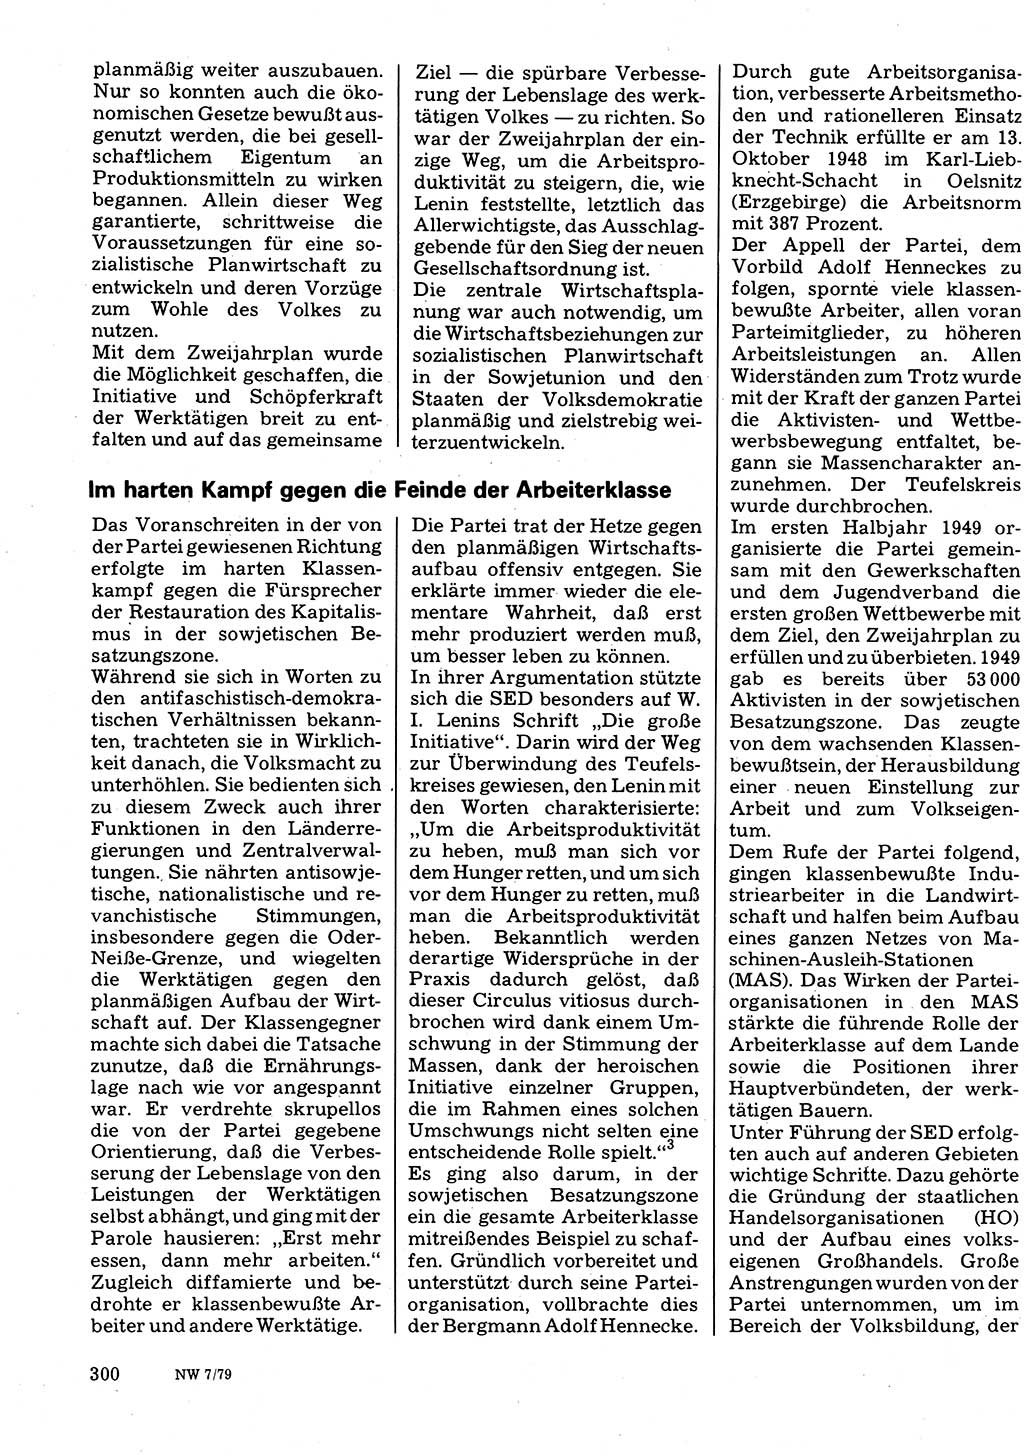 Neuer Weg (NW), Organ des Zentralkomitees (ZK) der SED (Sozialistische Einheitspartei Deutschlands) für Fragen des Parteilebens, 34. Jahrgang [Deutsche Demokratische Republik (DDR)] 1979, Seite 300 (NW ZK SED DDR 1979, S. 300)